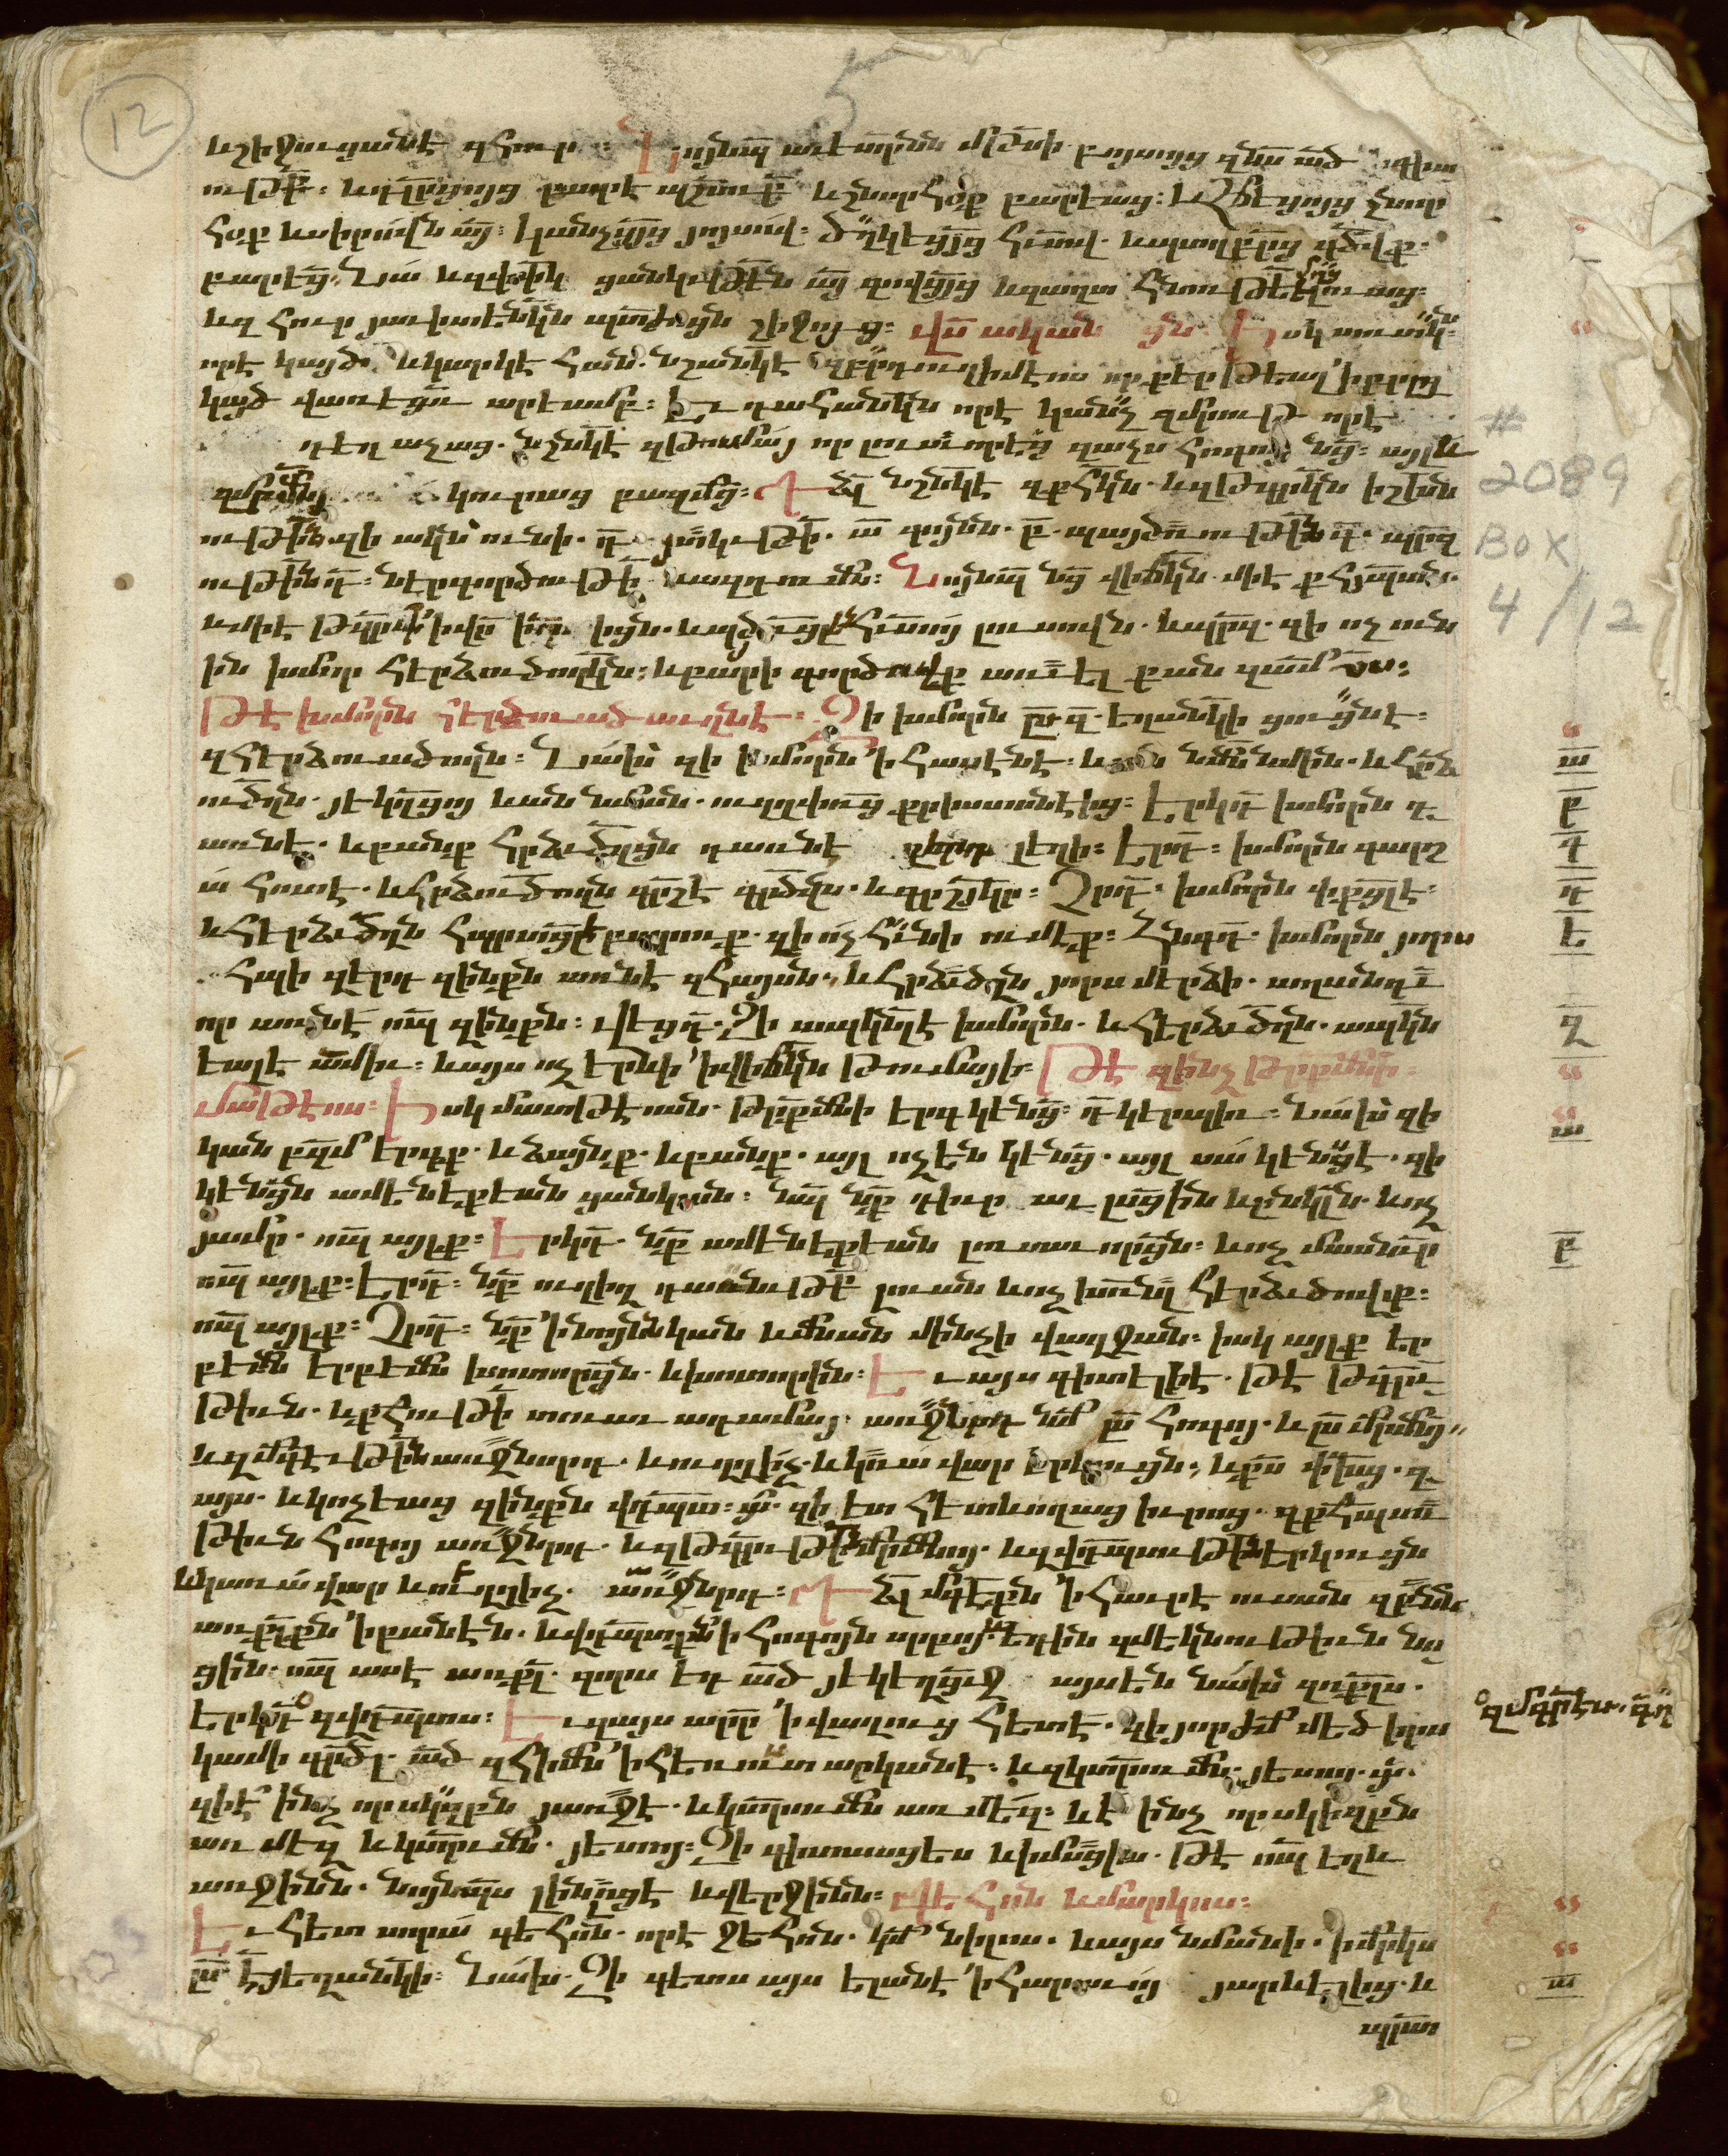 Manuscript No. 12: Miscellany